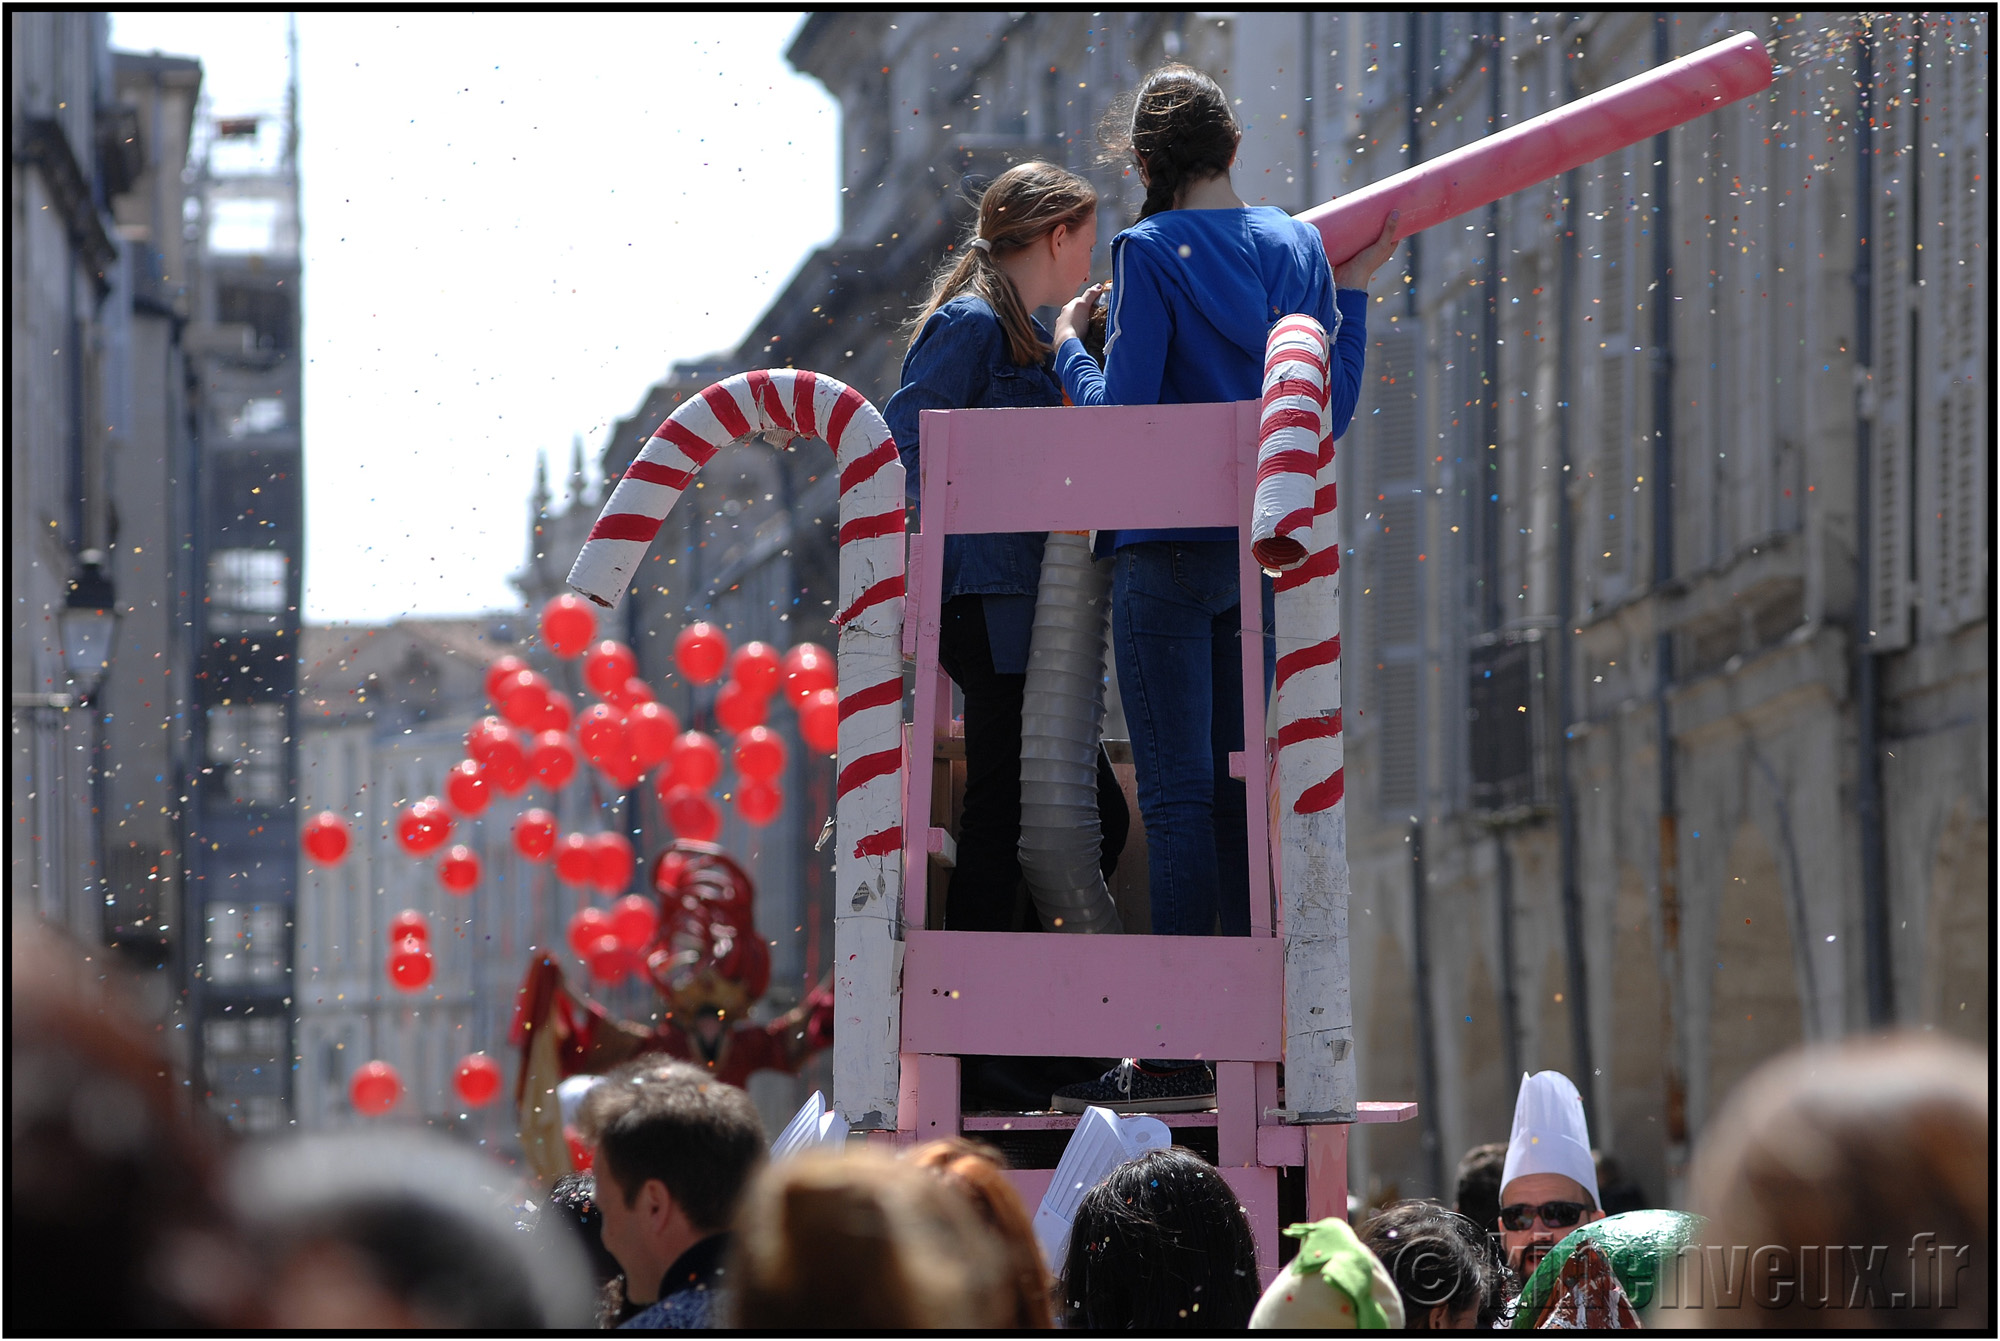 kinenveux_15_carnaval2015lr.jpg - Carnaval des Enfants 2015 - La Rochelle